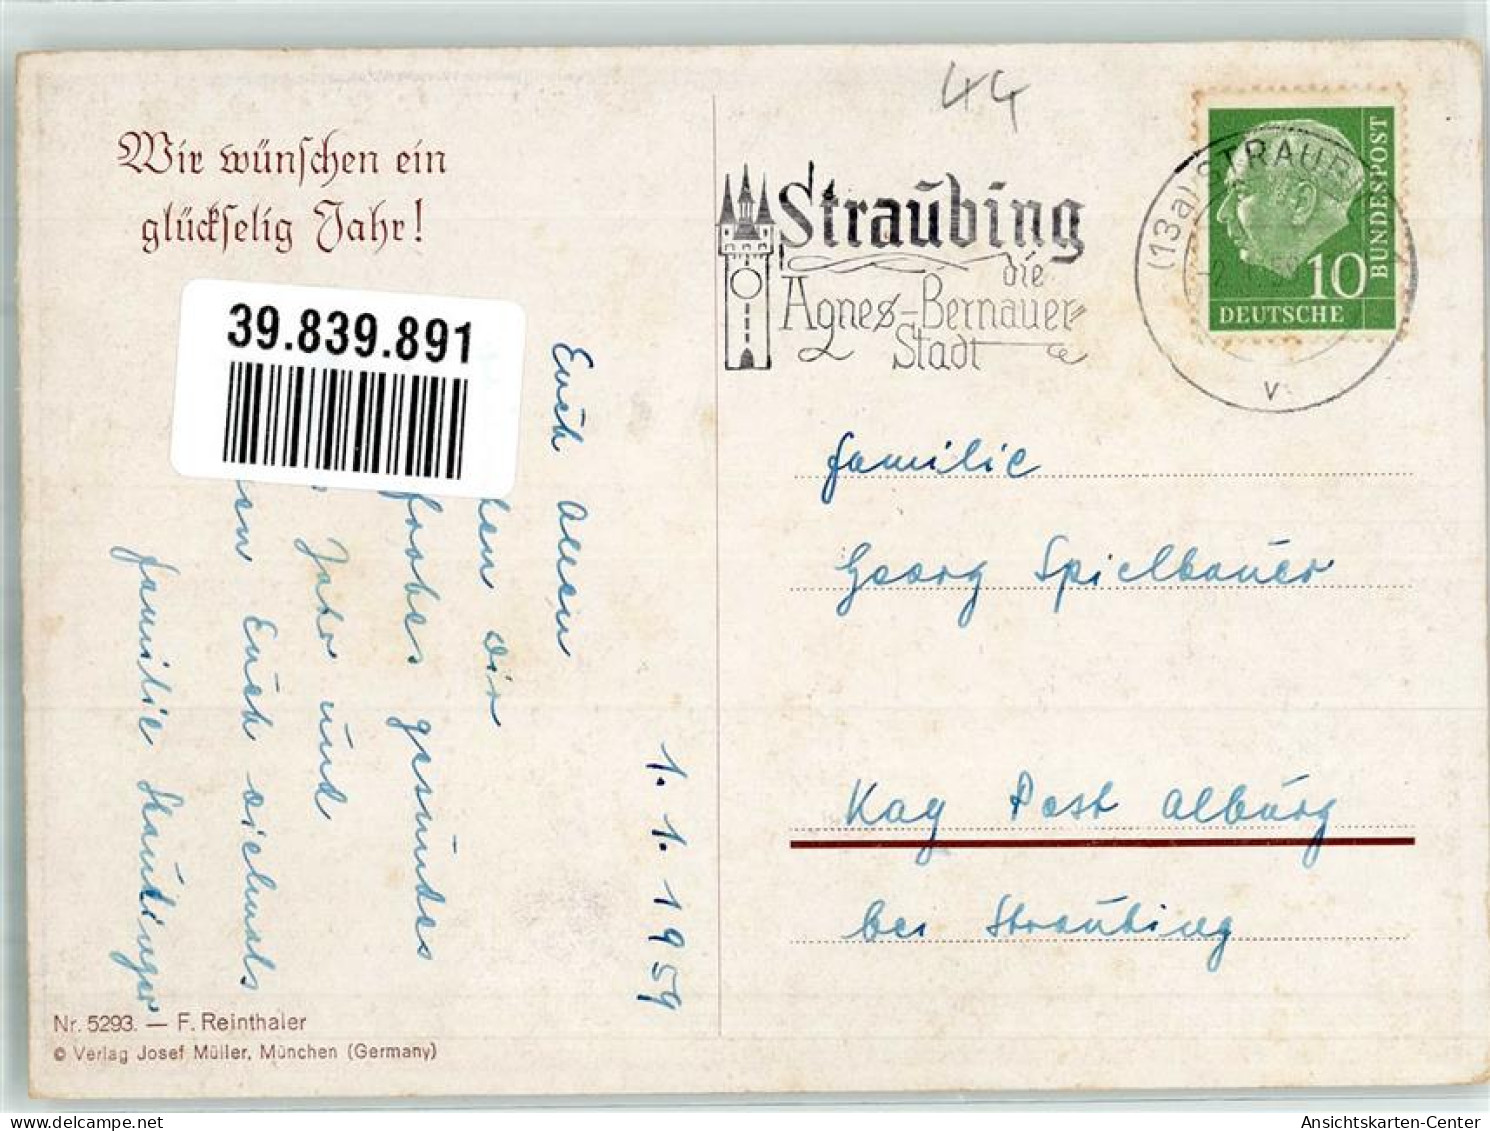 39839891 - Sign. Reinthaler F. Kinder Verlag Josef Mueller Nr. 5293 - Neujahr